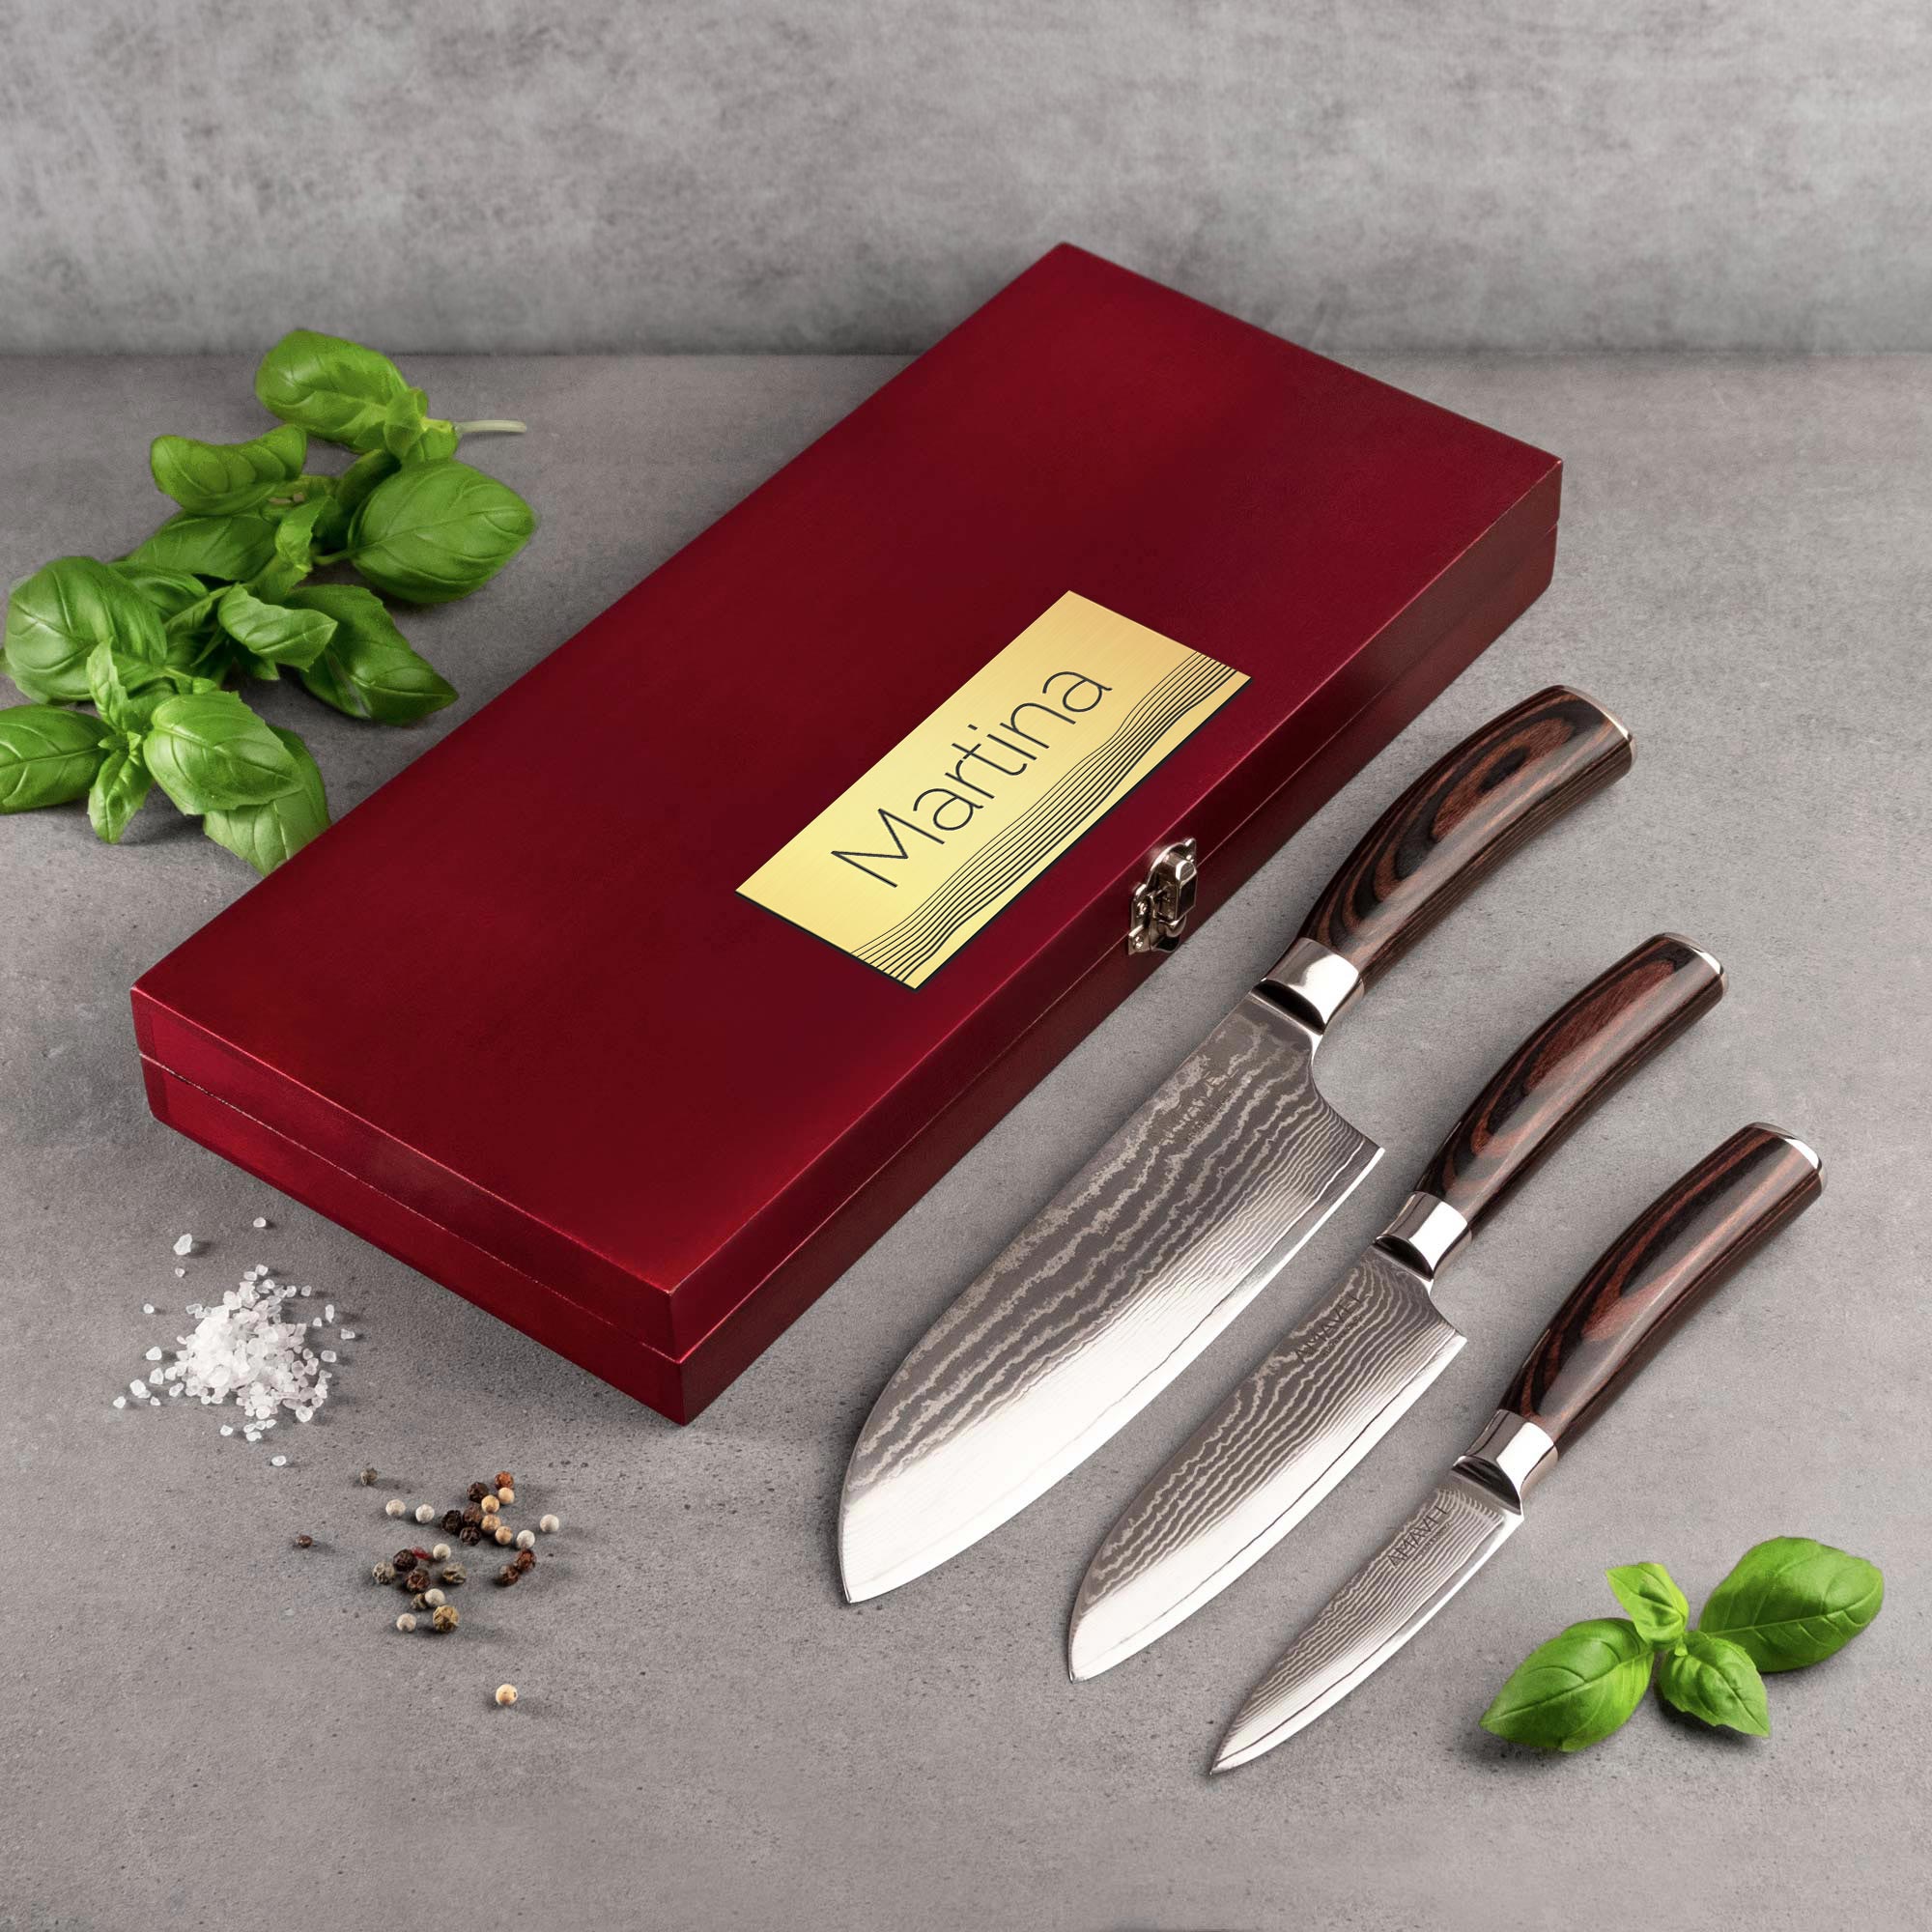 Damaszener Messer in Holzbox - 3er Set